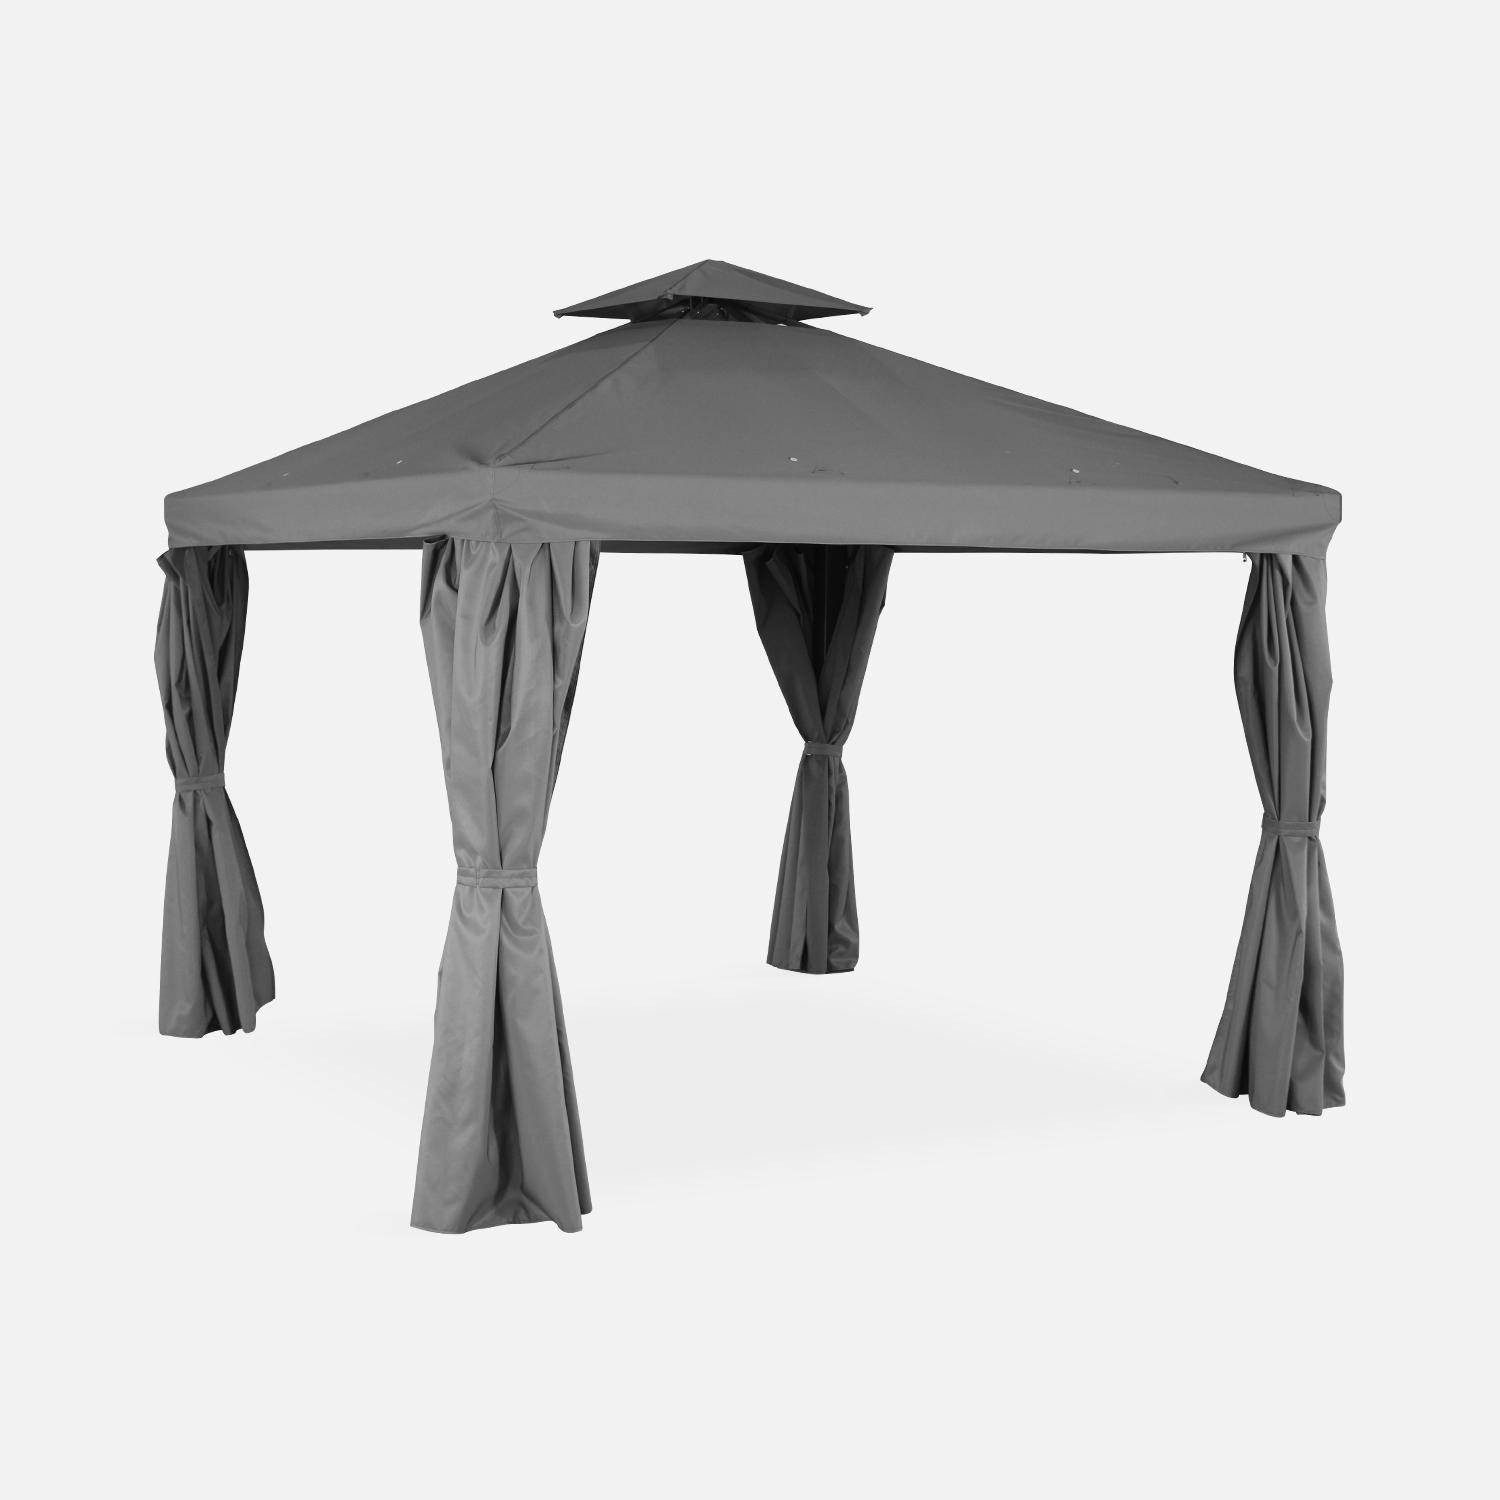 Pérgola de aluminio - Divodorum 3x3m - Lona gris - Cenador con cortinas, estructura de aluminio Photo1